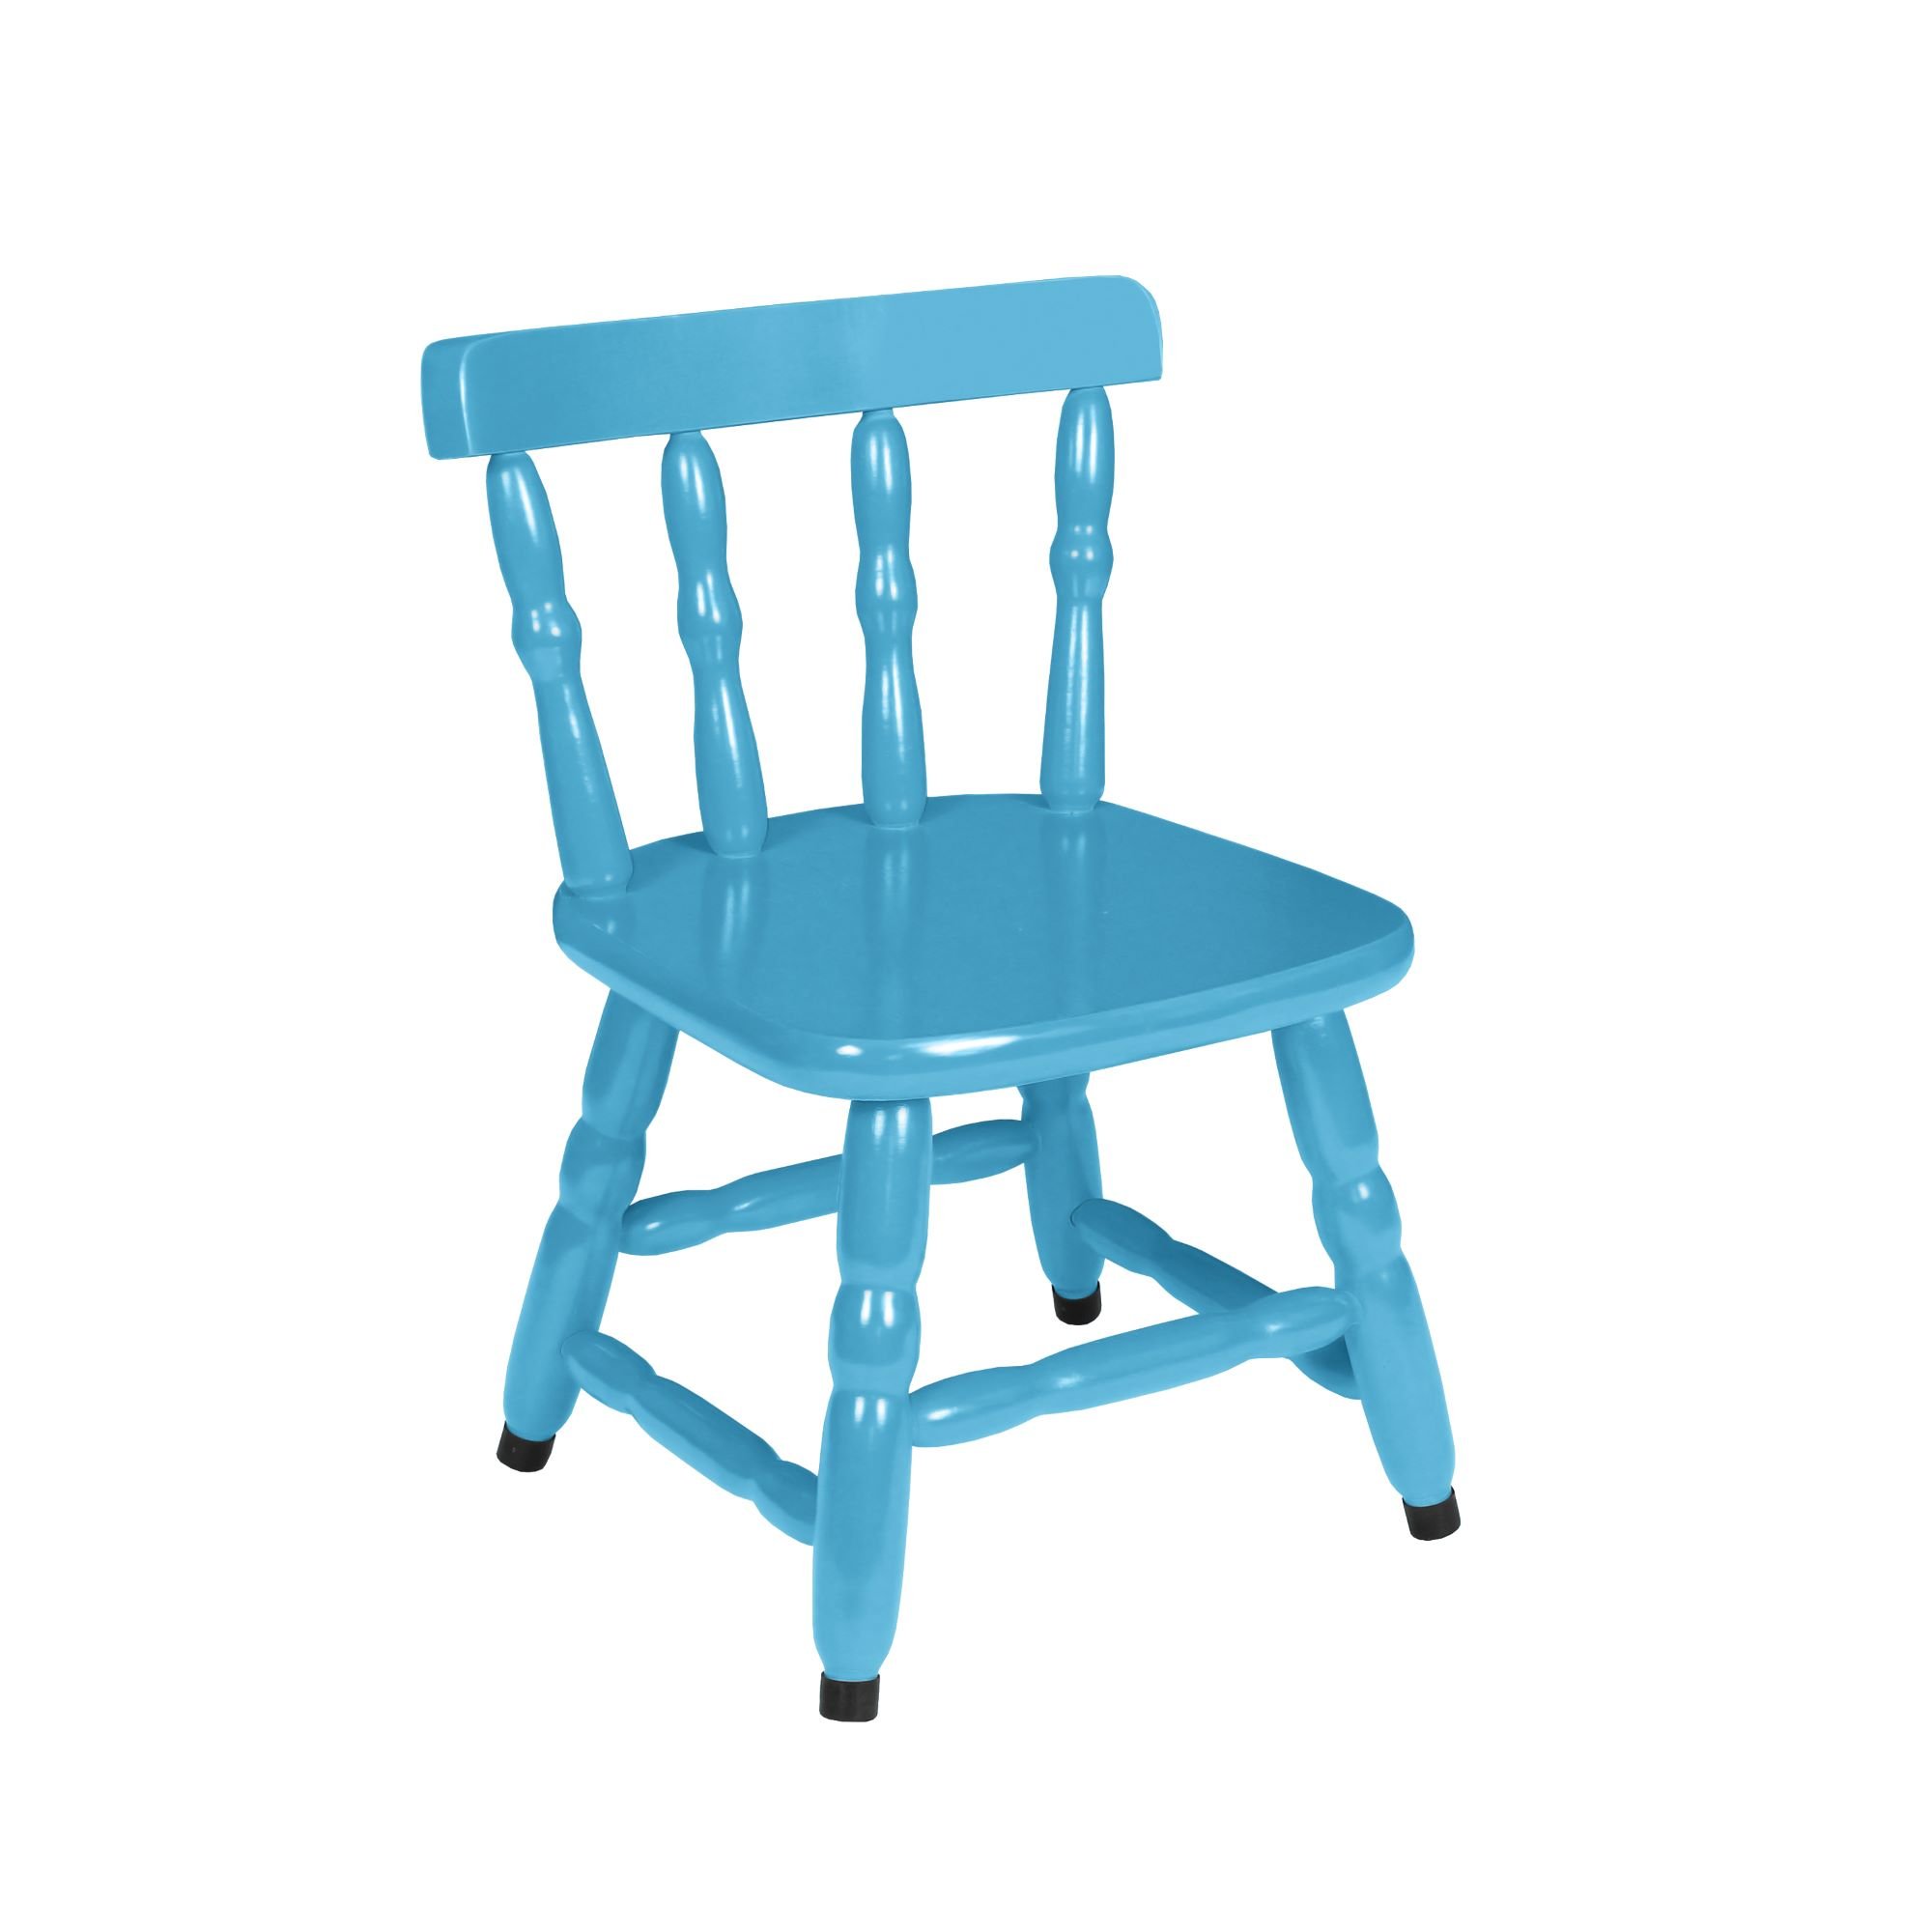 1 Cadeira Infantil Scholl Coloridas - Azul - 1